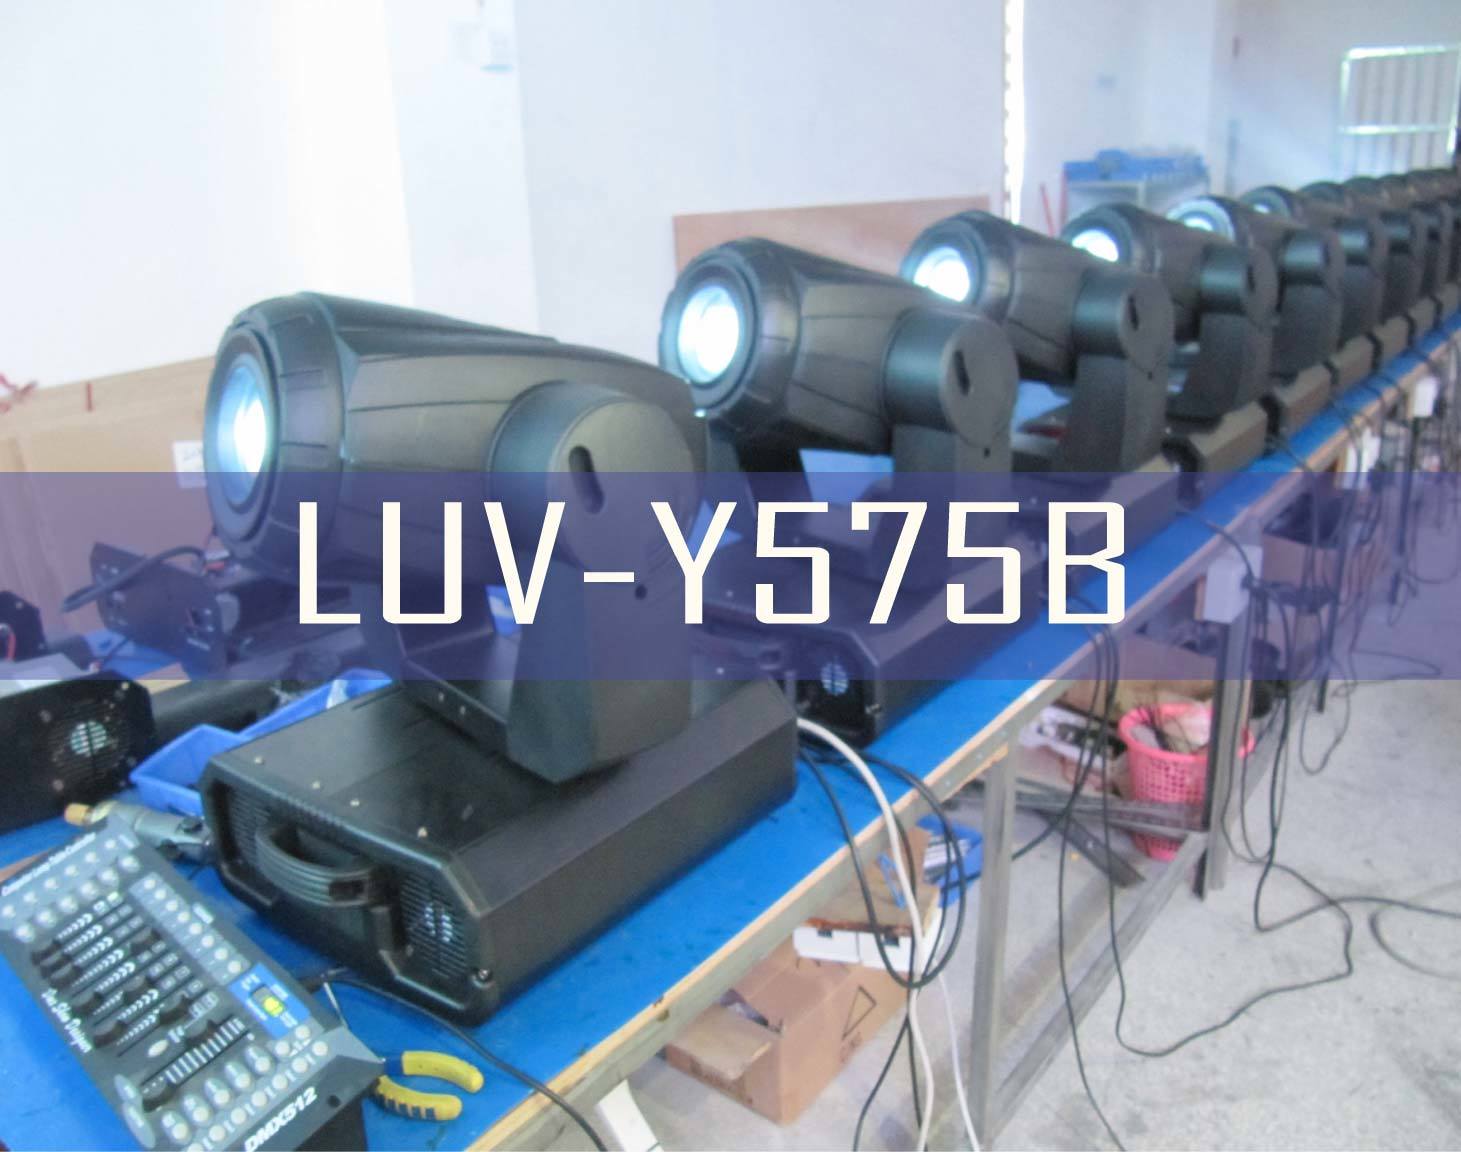 DMX512 Moving Head Light (LUV-Y575B)